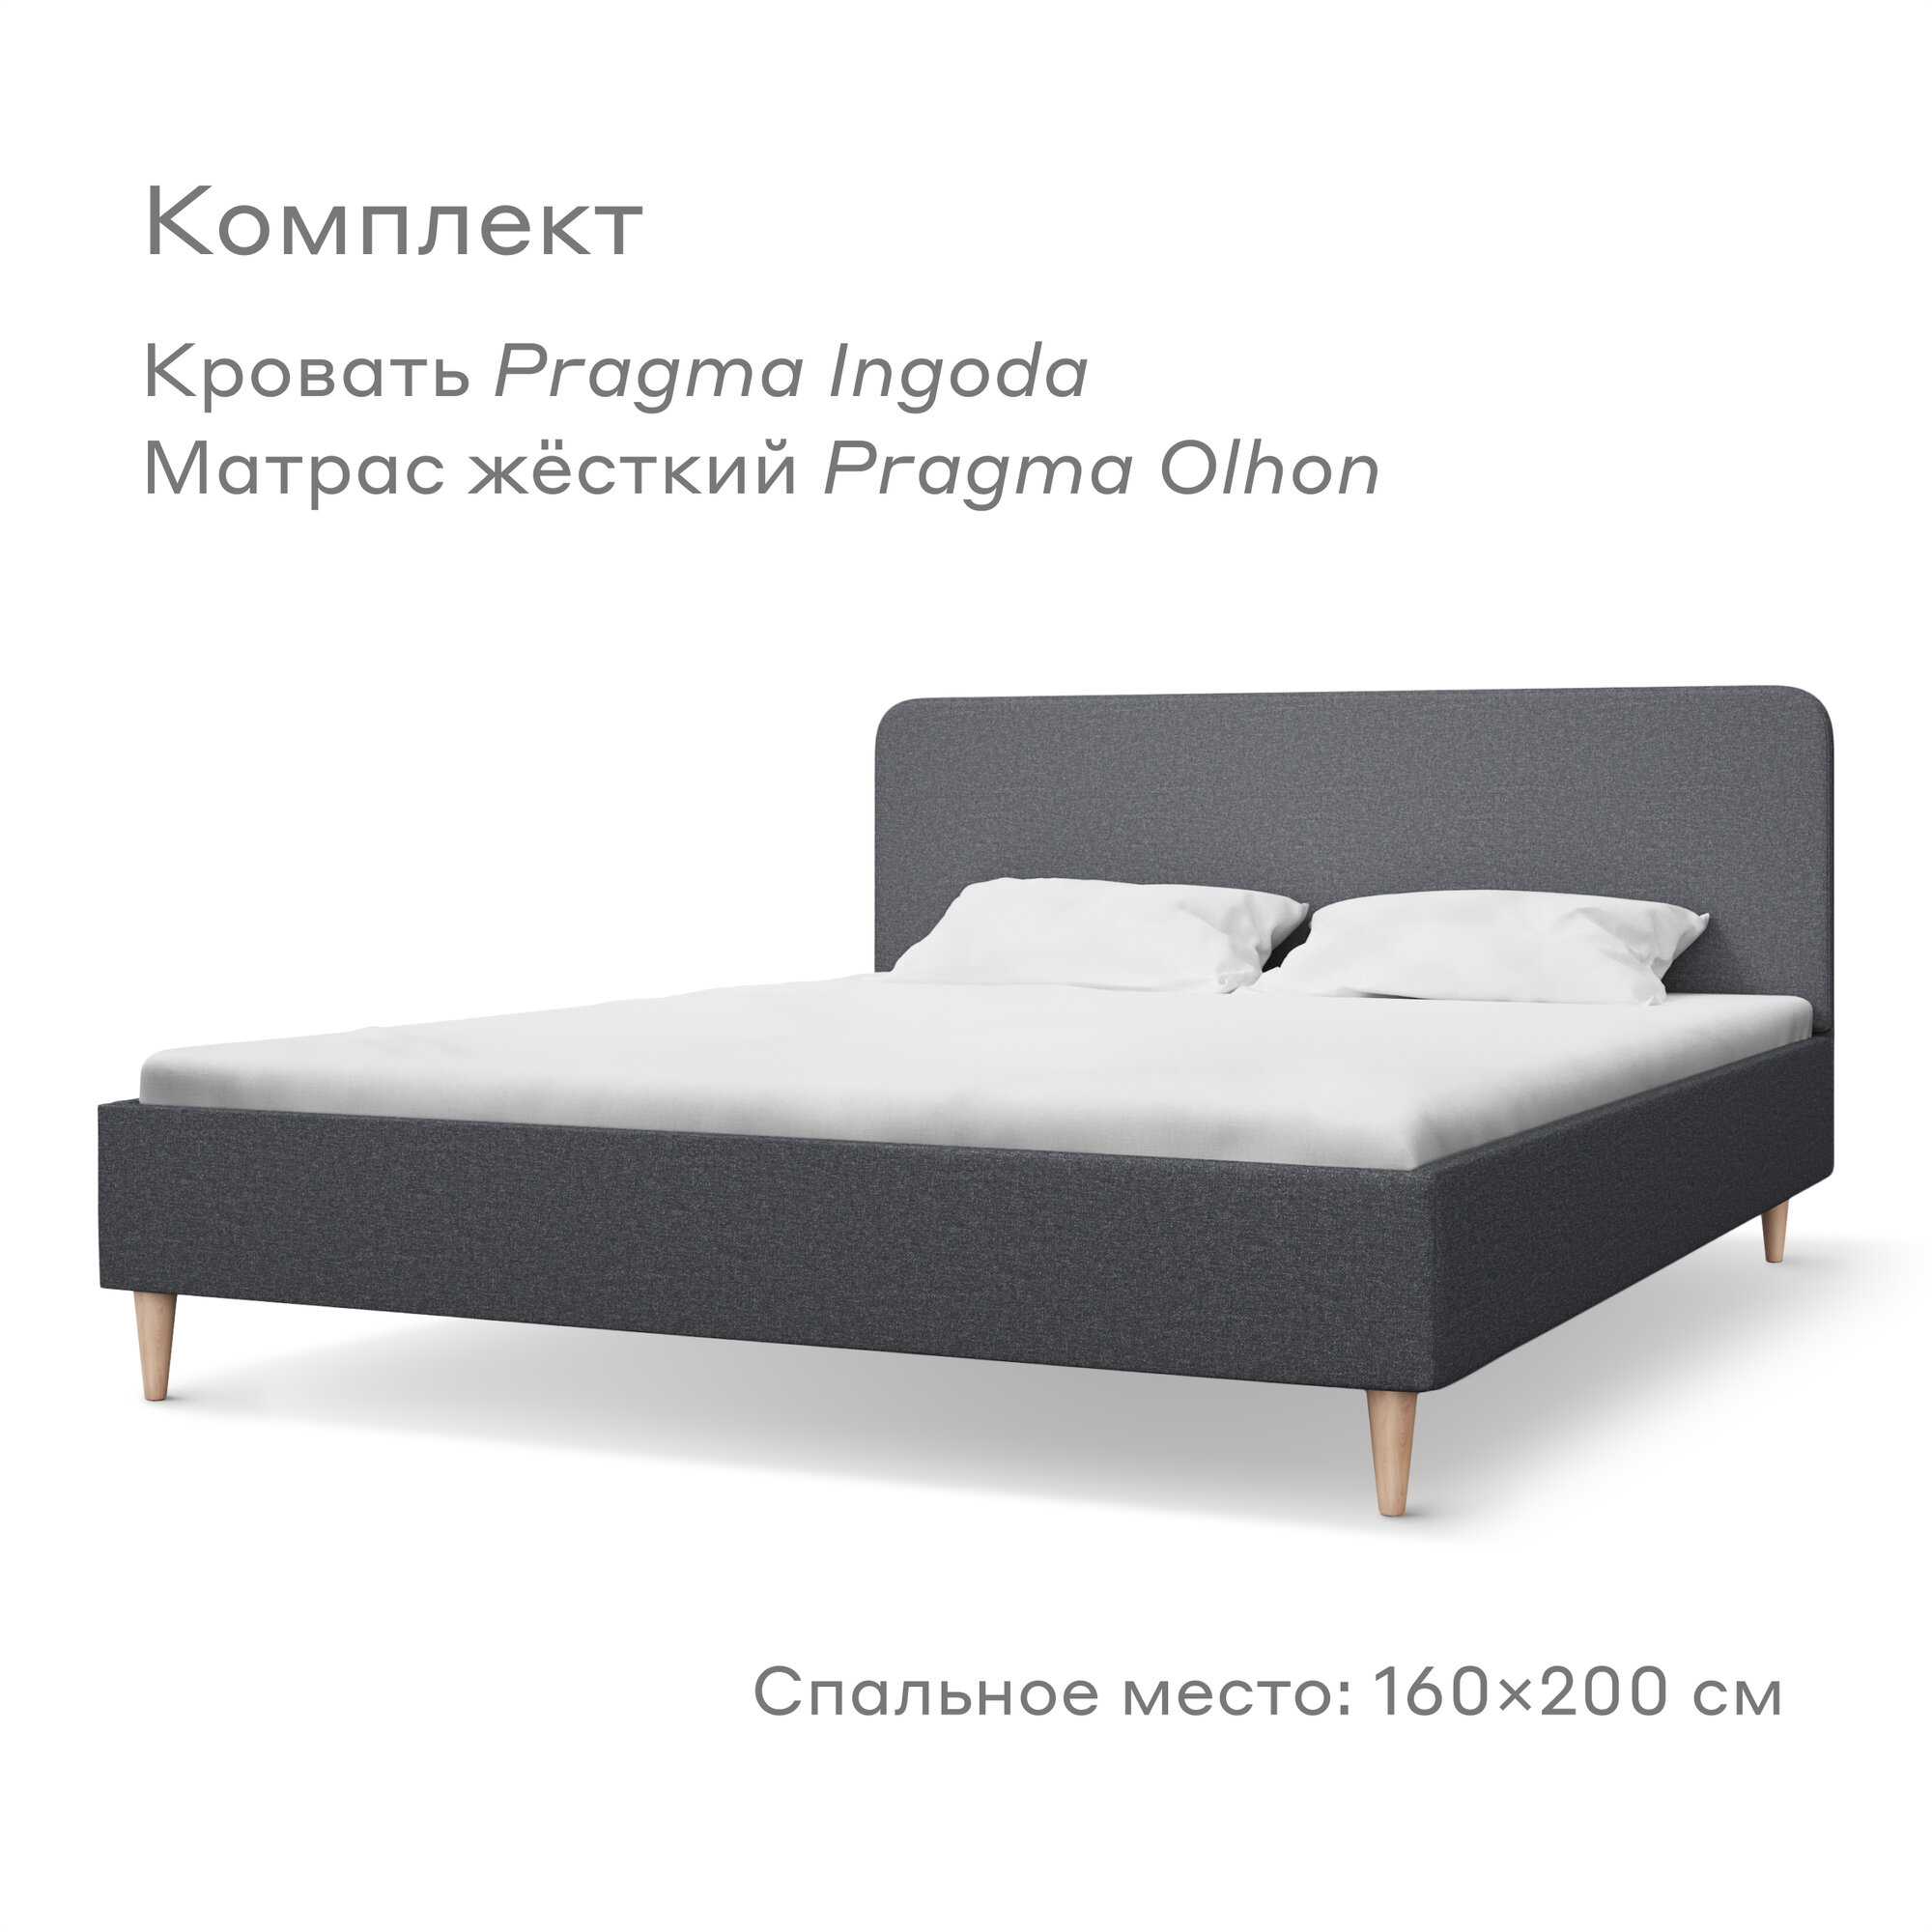 Кровать Pragma  с жестким матрасом , размер (ДхШ): 206х165 см, спальное место (ДхШ): 200х160 см, обивка: текстиль, с матрасом, цвет: серый